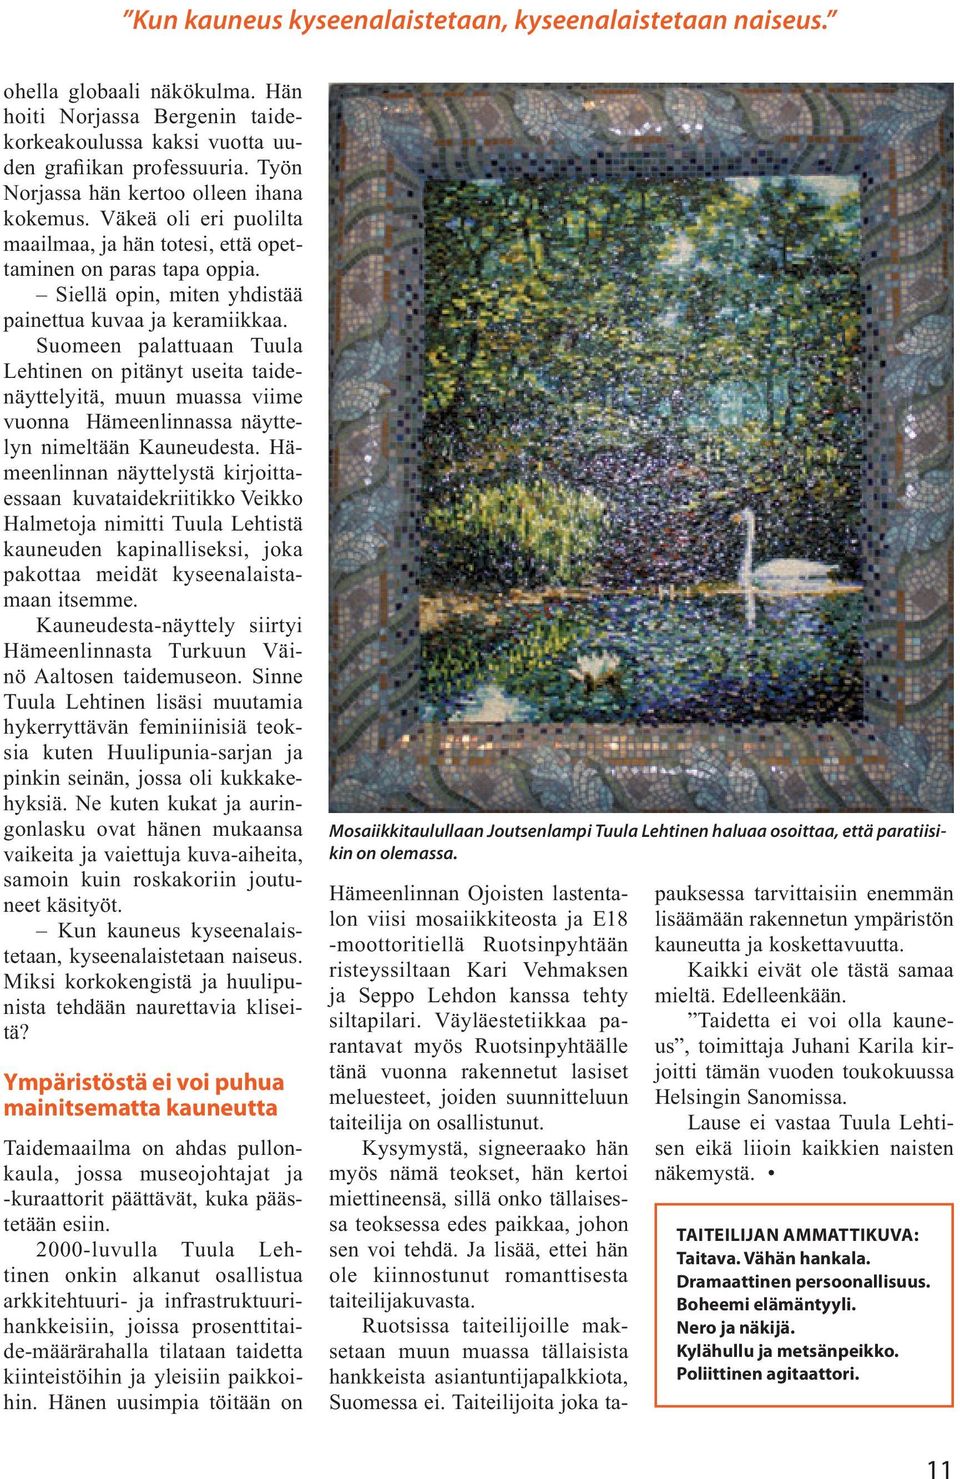 Suomeen palattuaan Tuula Lehtinen on pitänyt useita taidenäyttelyitä, muun muassa viime vuonna Hämeenlinnassa näyttelyn nimeltään Kauneudesta.